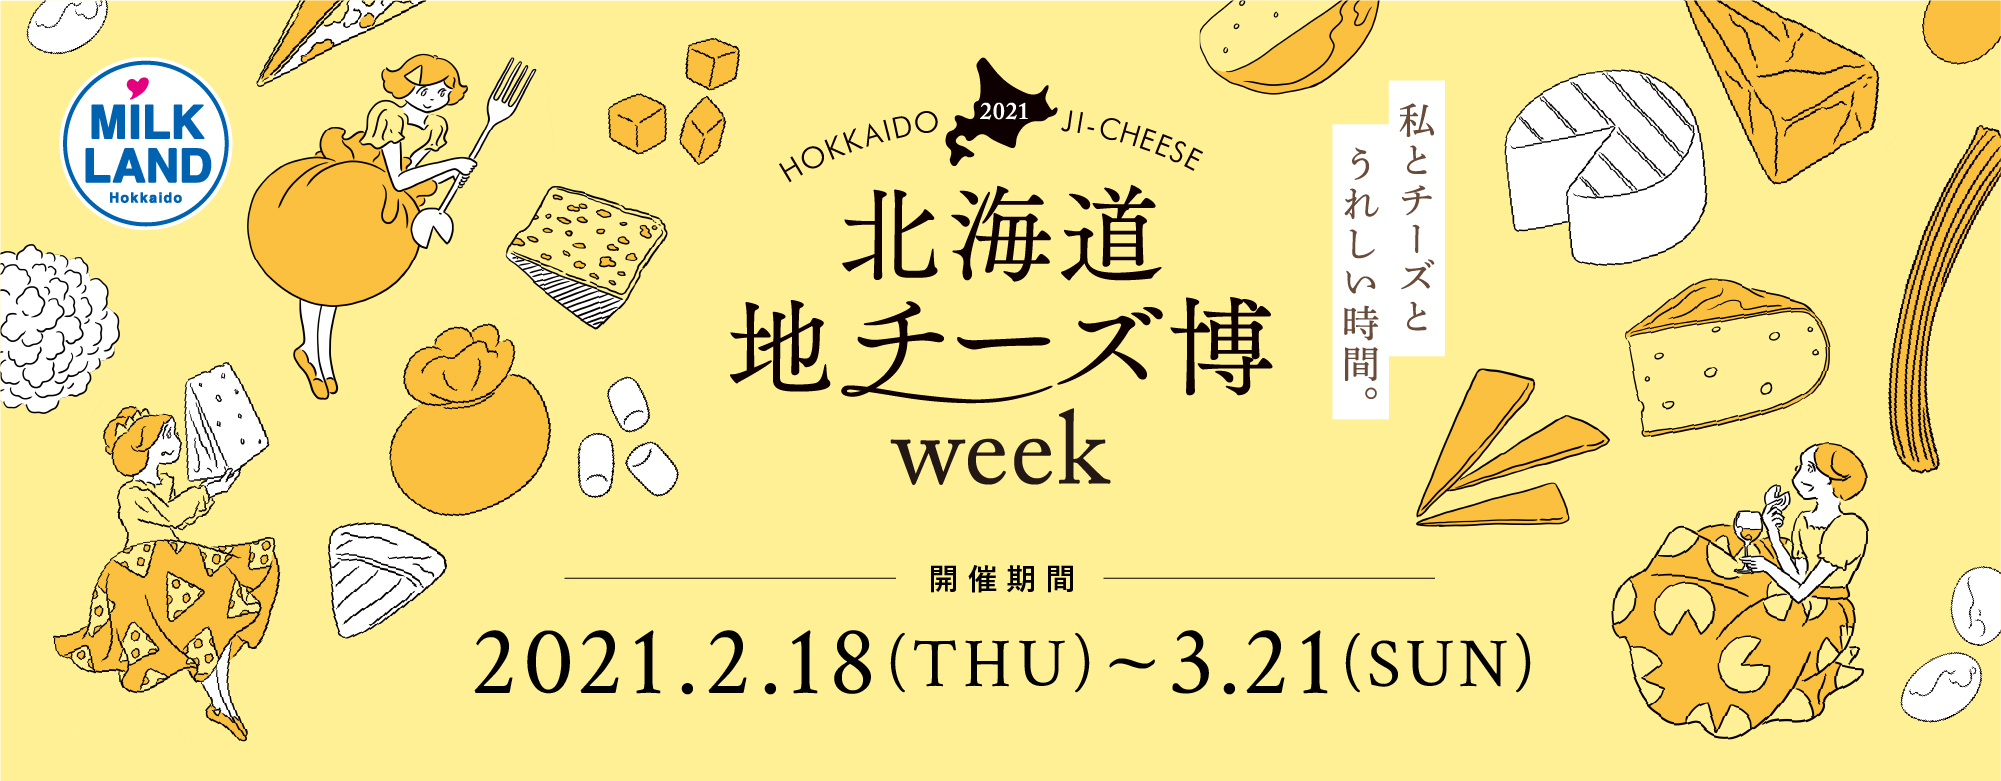 おうち時間を楽しむ 限定アソートセット のメニューを公開 絶品チーズが集結する 北海道地チーズ博 Week ホクレン農業協同組合連合会のプレスリリース